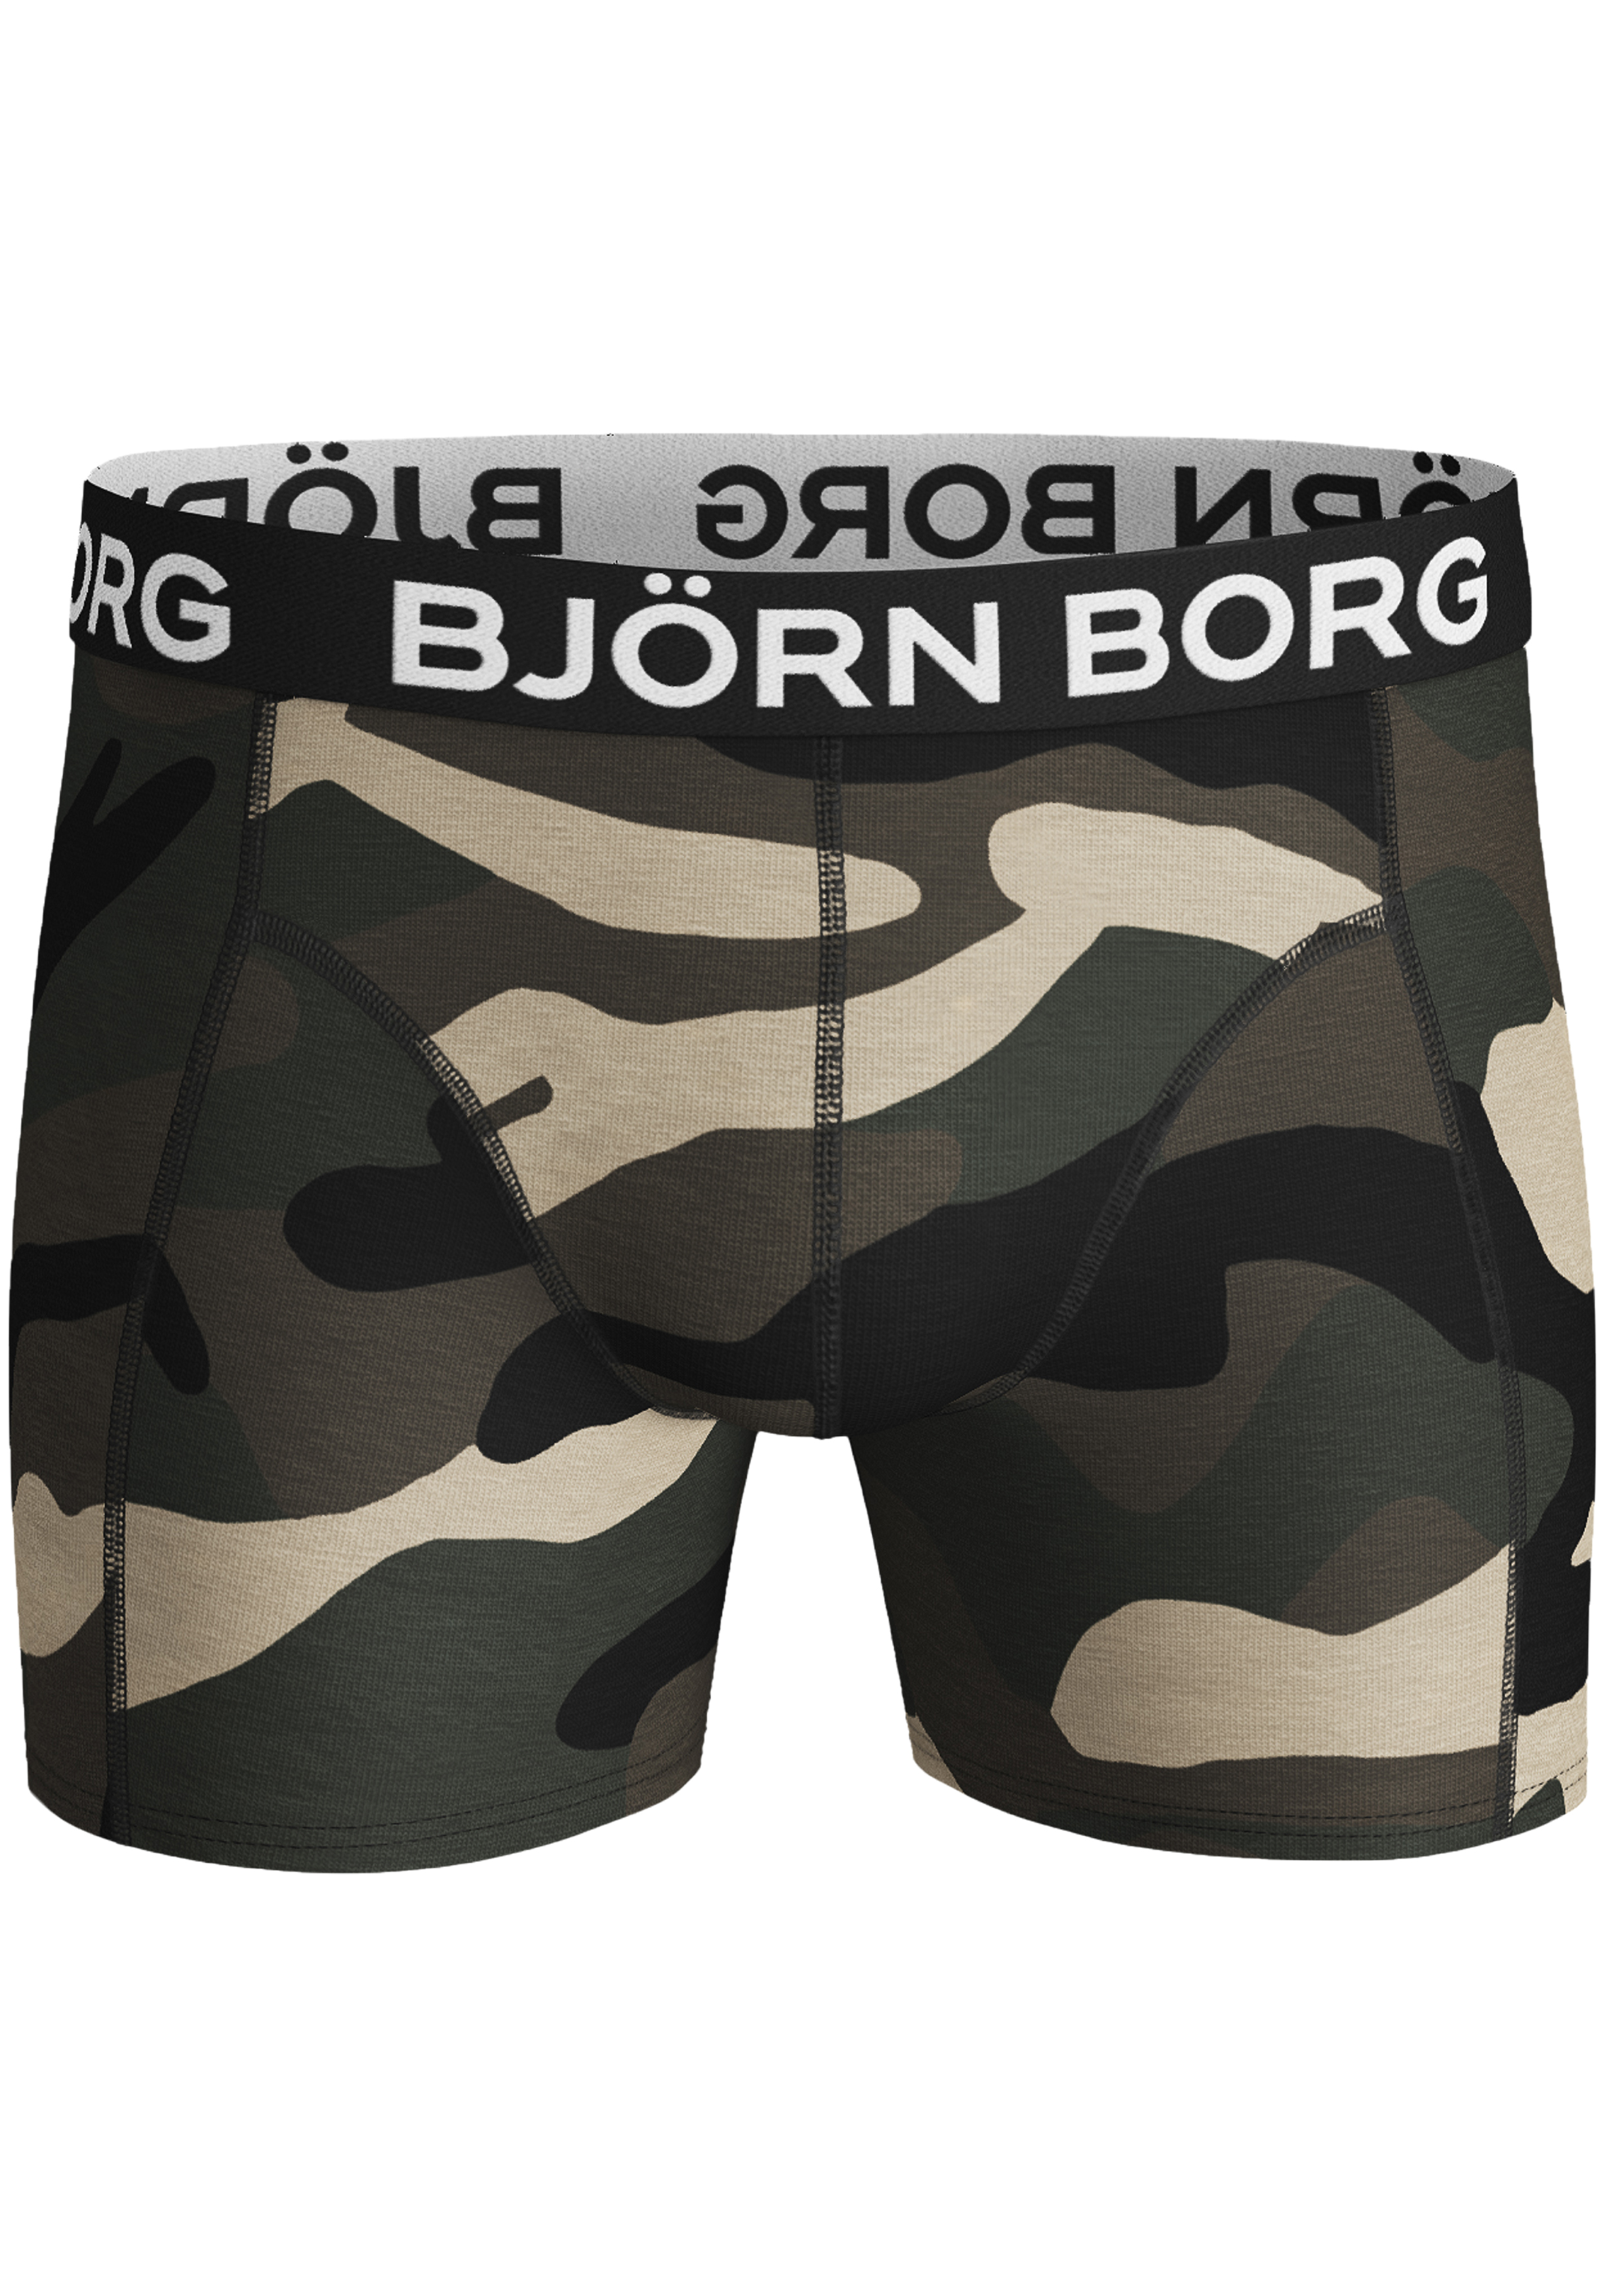 Tegenstander taart veeg Bjorn Borg boxershorts Core (2-pack), heren boxers normale lengte,... -  vakantie DEALS: bestel vele artikelen van topmerken met korting